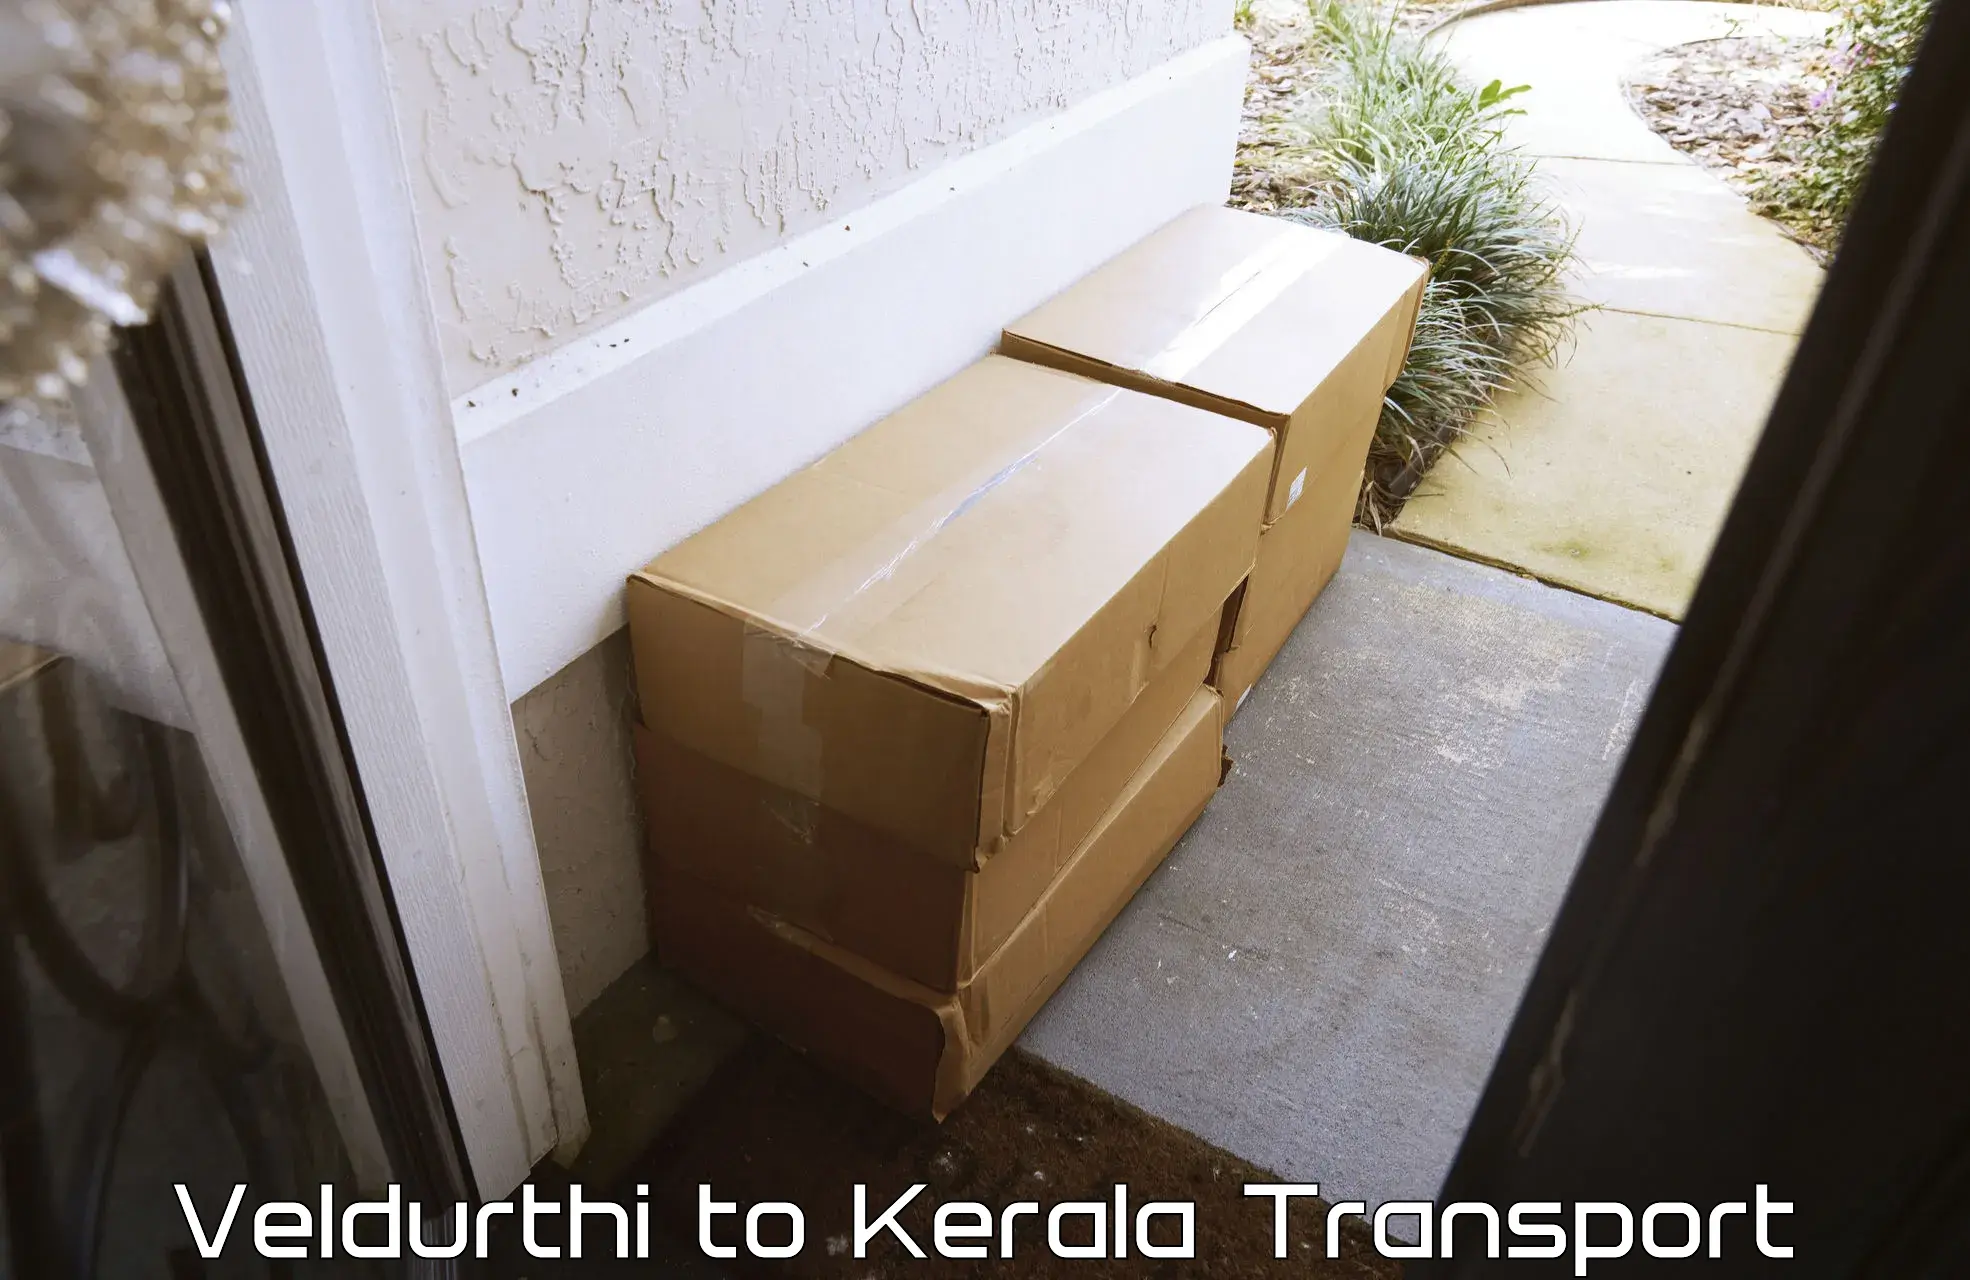 Intercity goods transport in Veldurthi to Manjeshwar